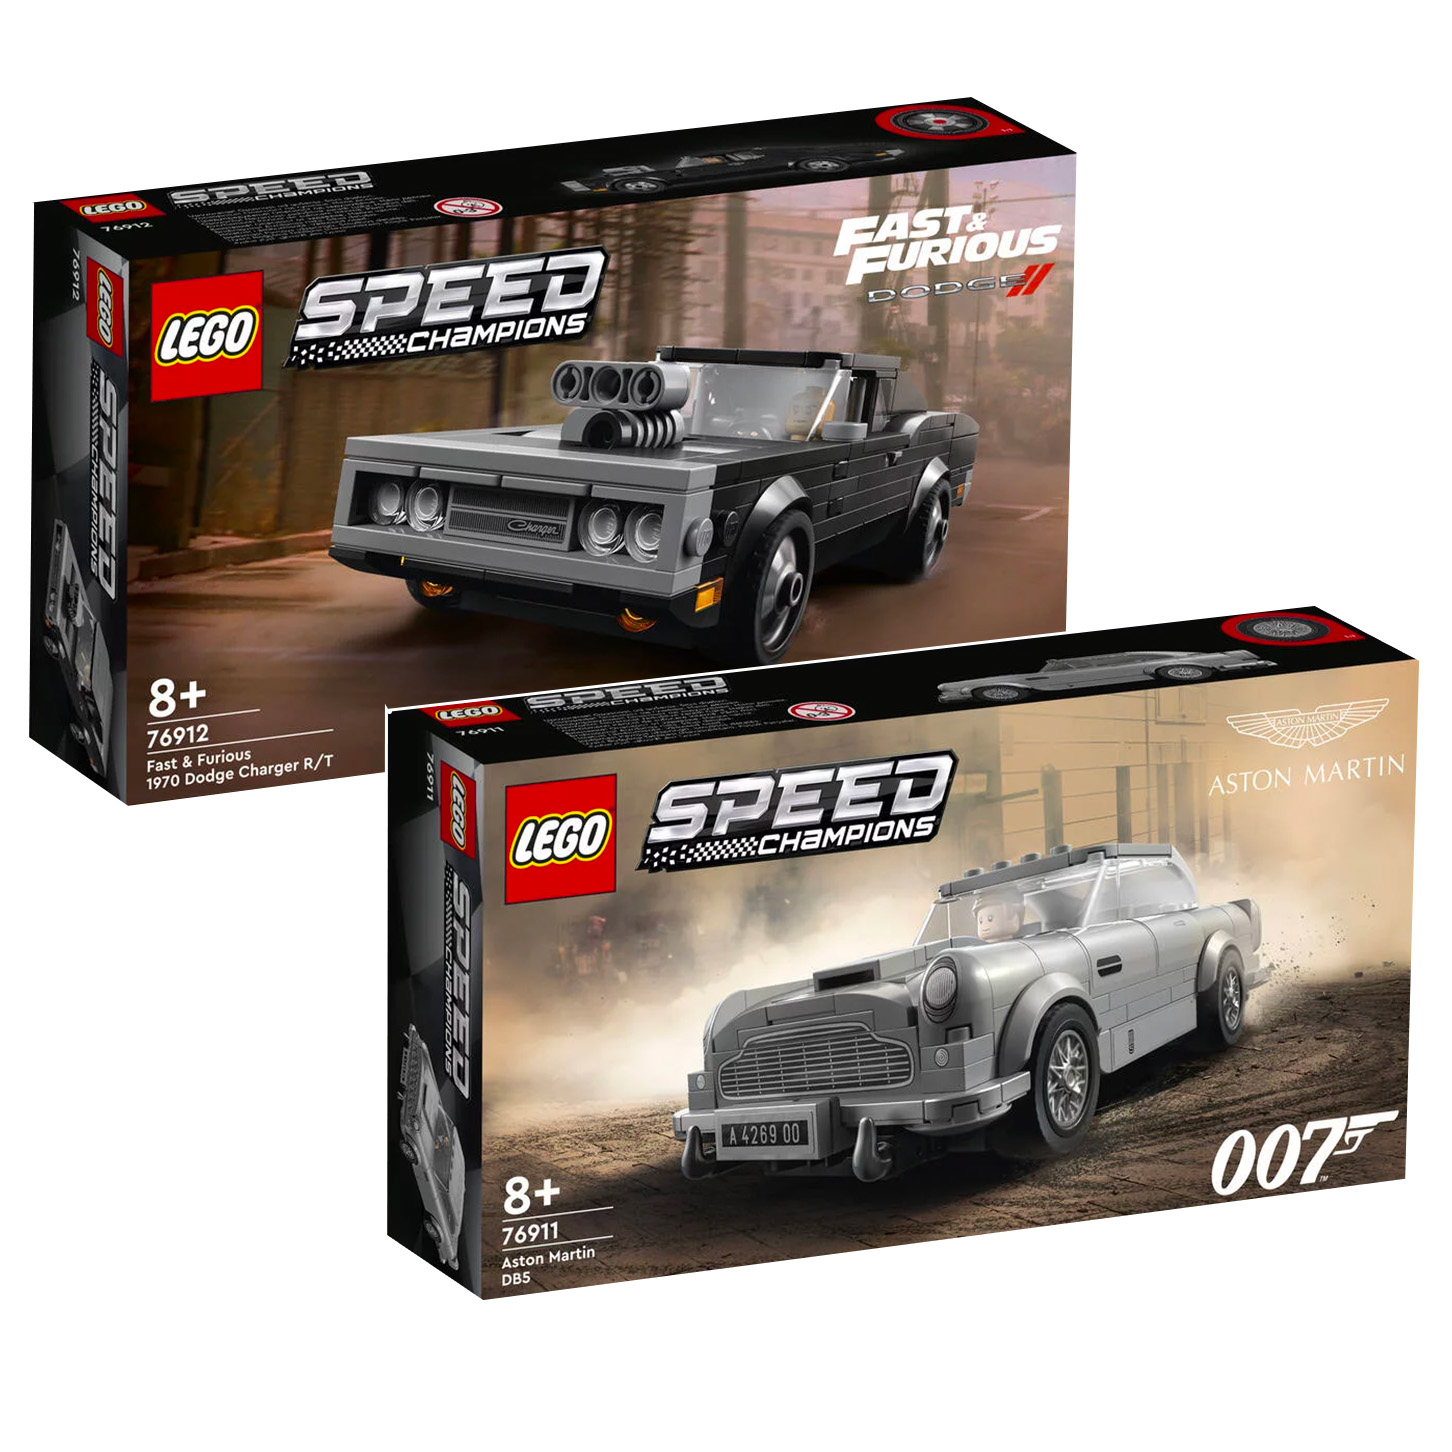 Nuwe LEGO Speed ​​​​Champions 76911 Aston Martin DB5 en 76912 Fast & Furious 1970 Dodge Charger R/T-stelle is aanlyn in die winkel